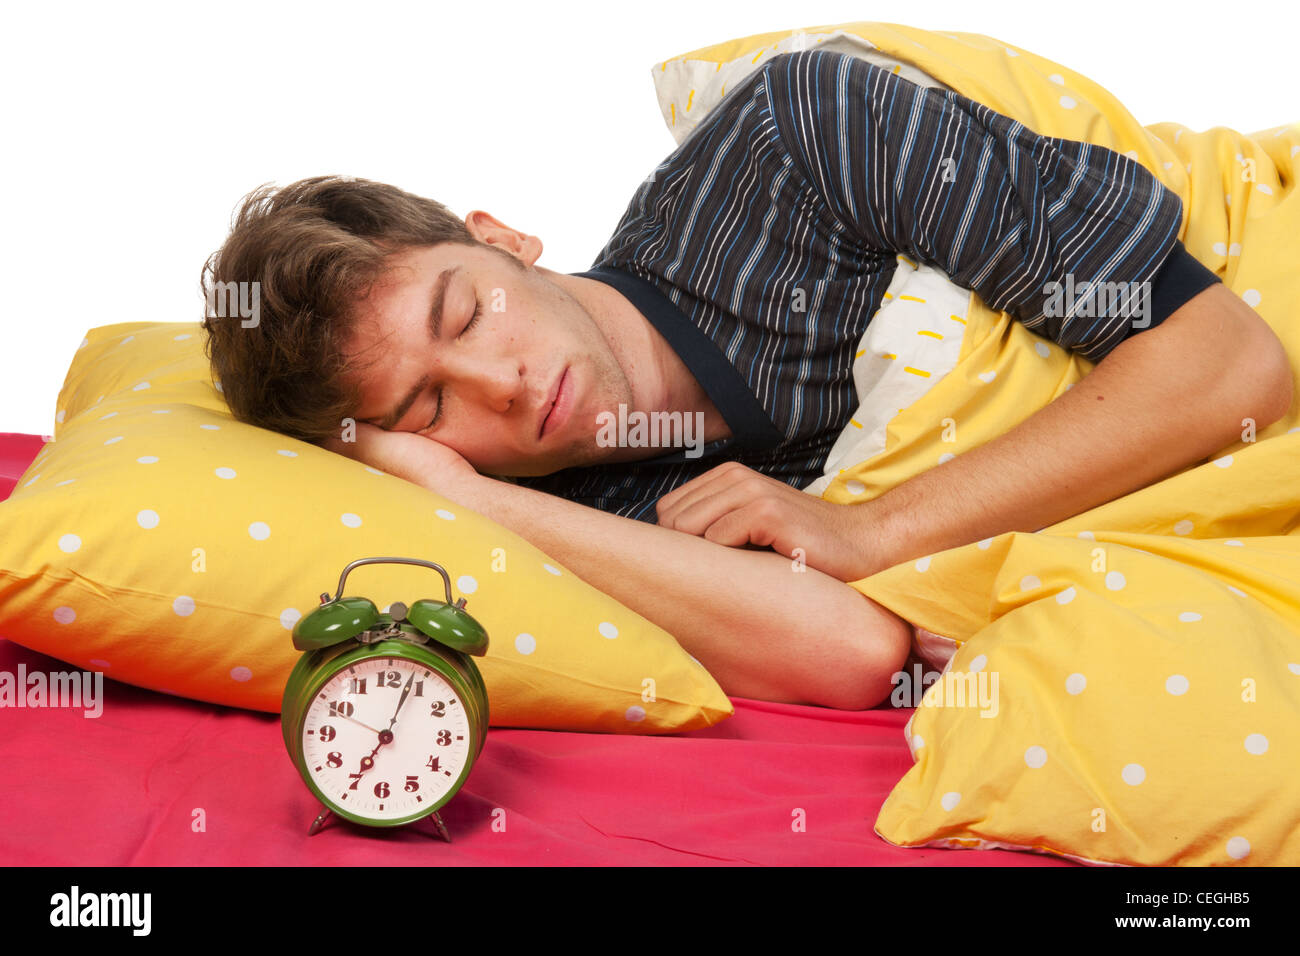 На нем спят 6 букв. Полноценный сон картинки с мужчиной. Занятие здоровый сон картинки. Alarm Clock and boy sleeping Bedroom images.